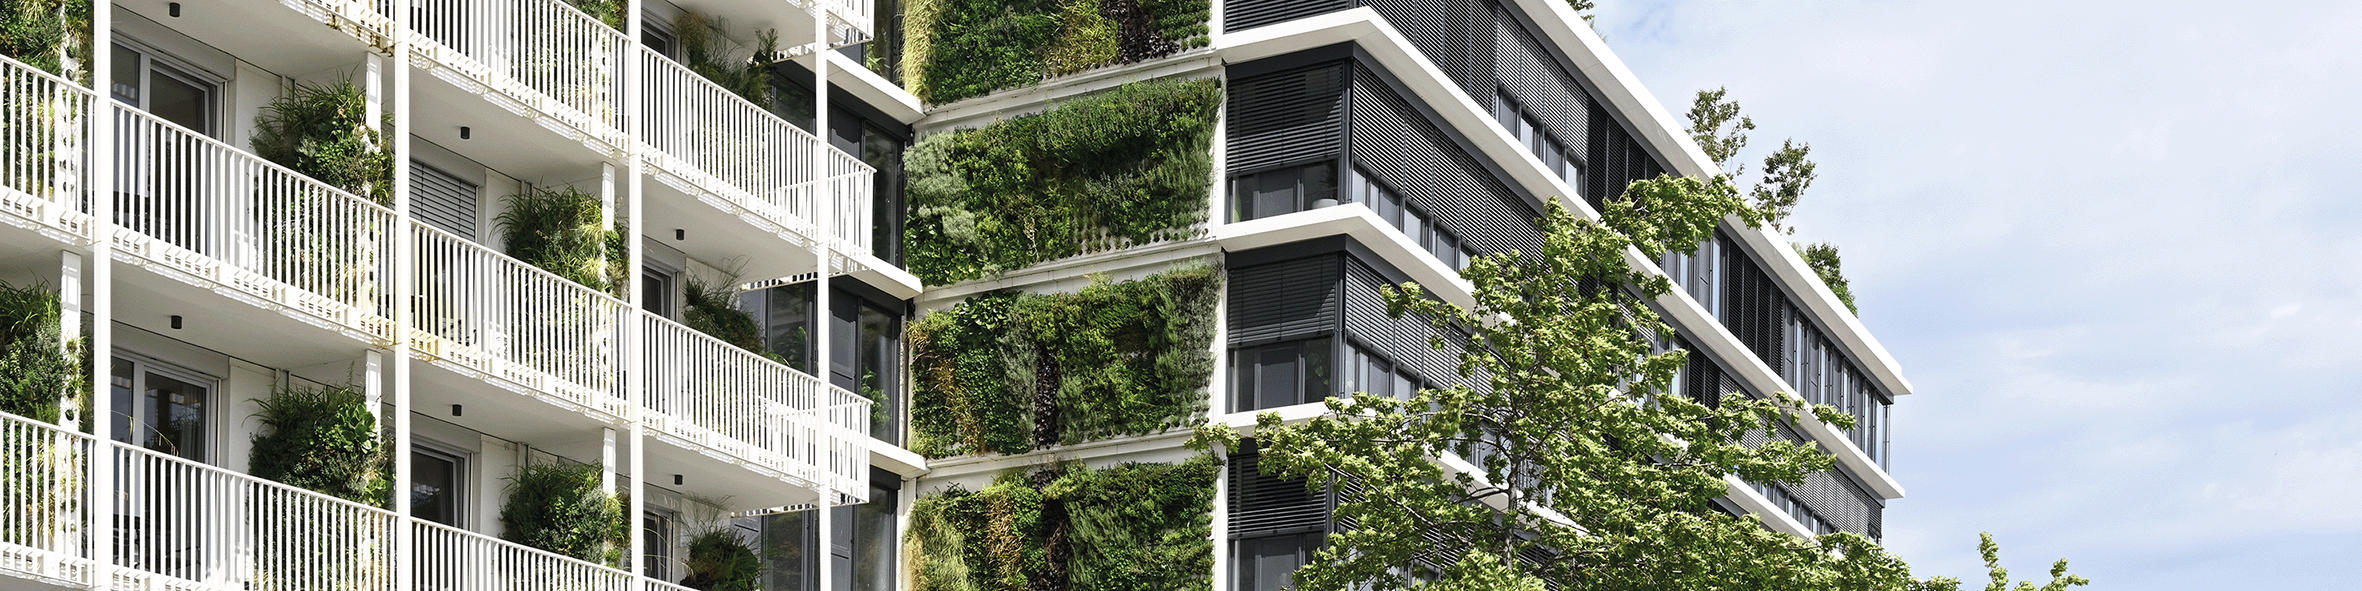 Die Pflanzwand Adam von Richard Brink wird zur Fassadenbegrünung an einem modernen Hochhaus eingesetzt